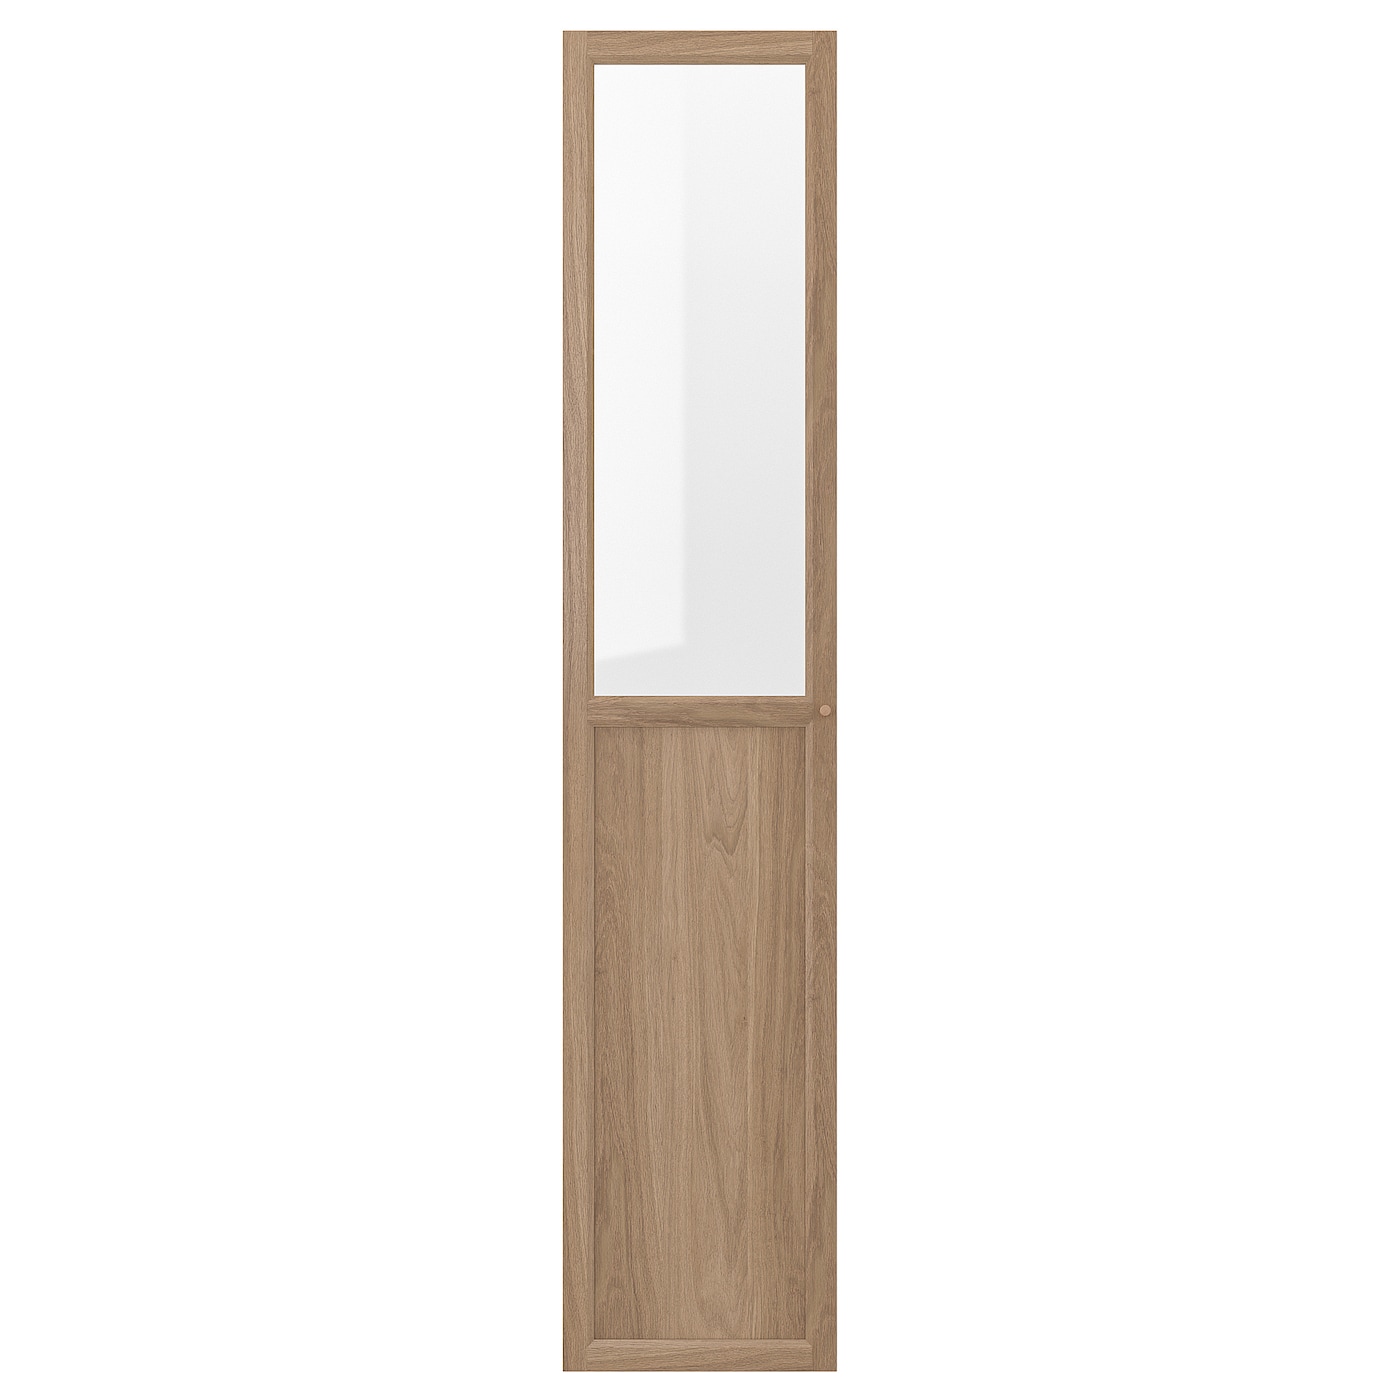 Стеклянная дверь - IKEA FORSBACKA/ФОРСБАКА ИКЕА, 40х192 см, светло-коричневый